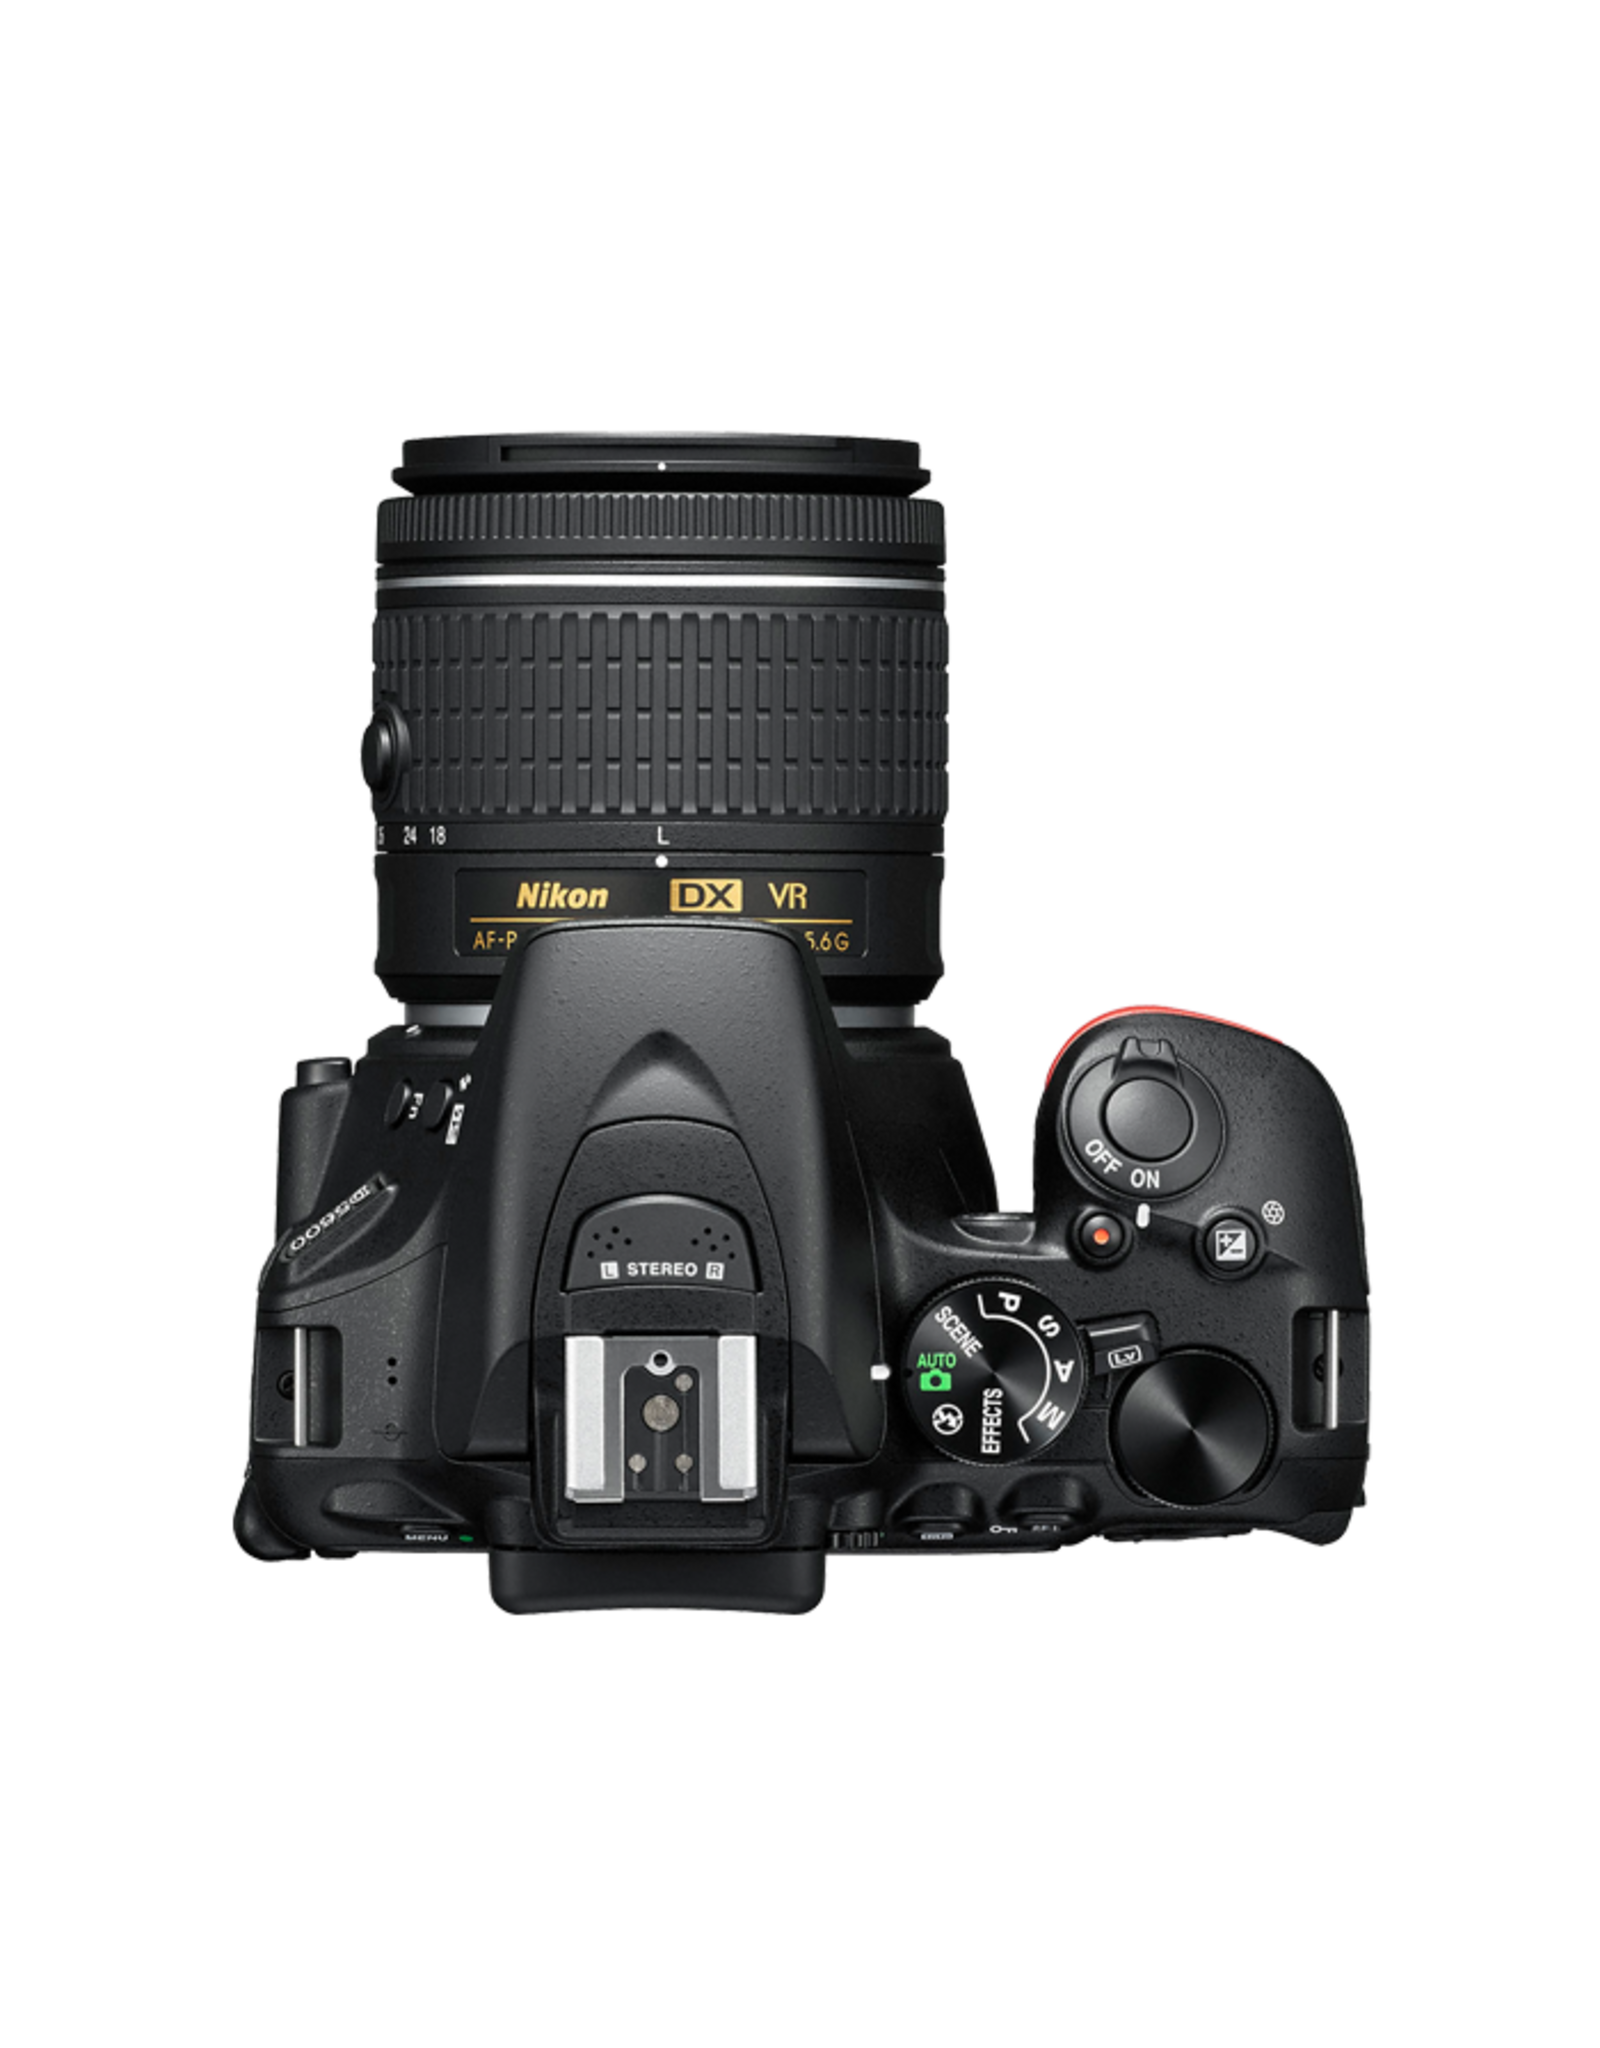 Nikon Nikon D5600 DSLR Camera with 18-55mm Lens (Black)